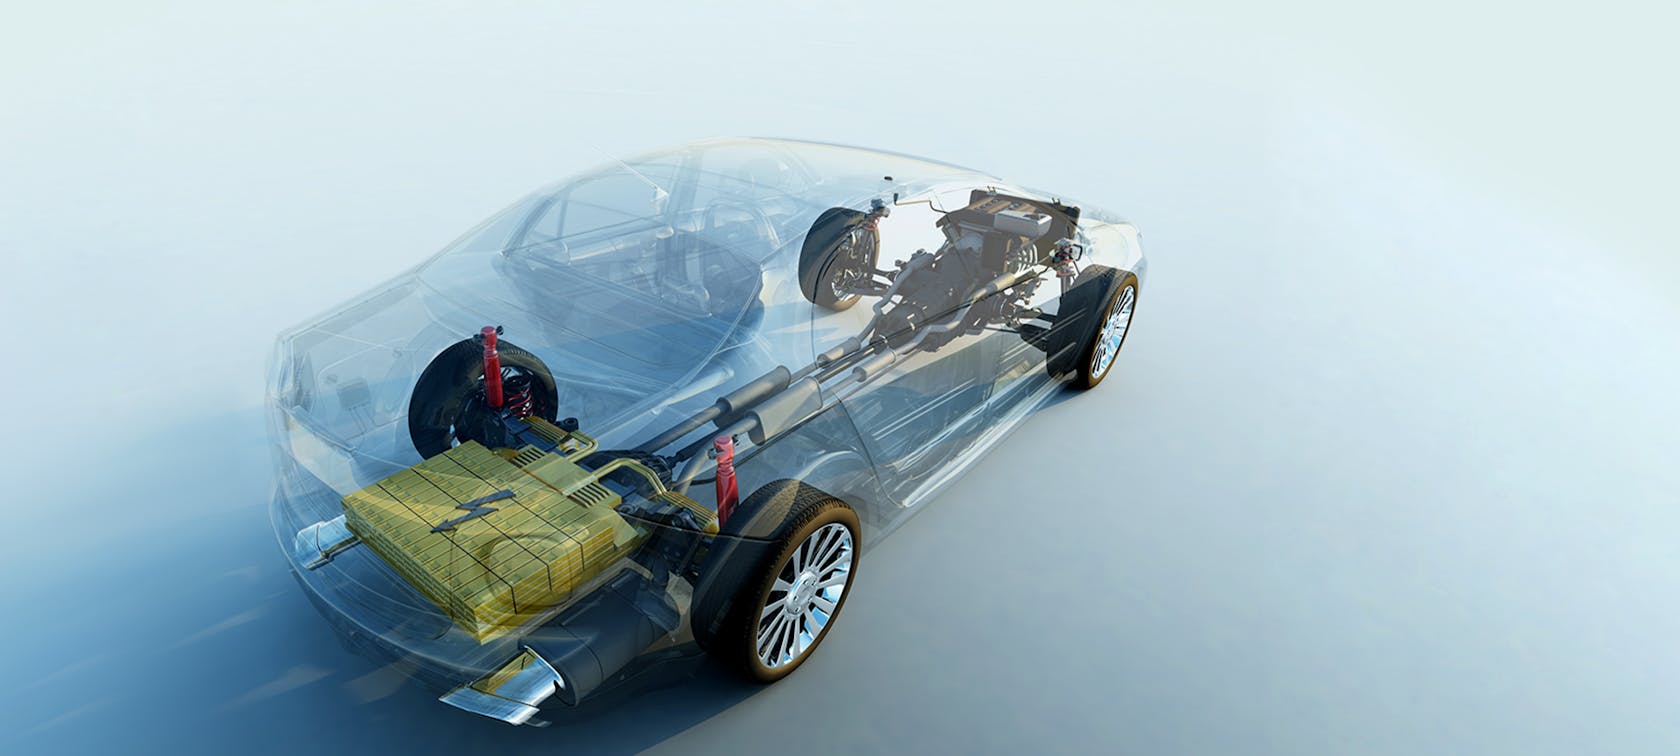 سيارة ذات محرك كهربائي وهيكل شفاف وتتحرك بشكل مائل عبر الصورة